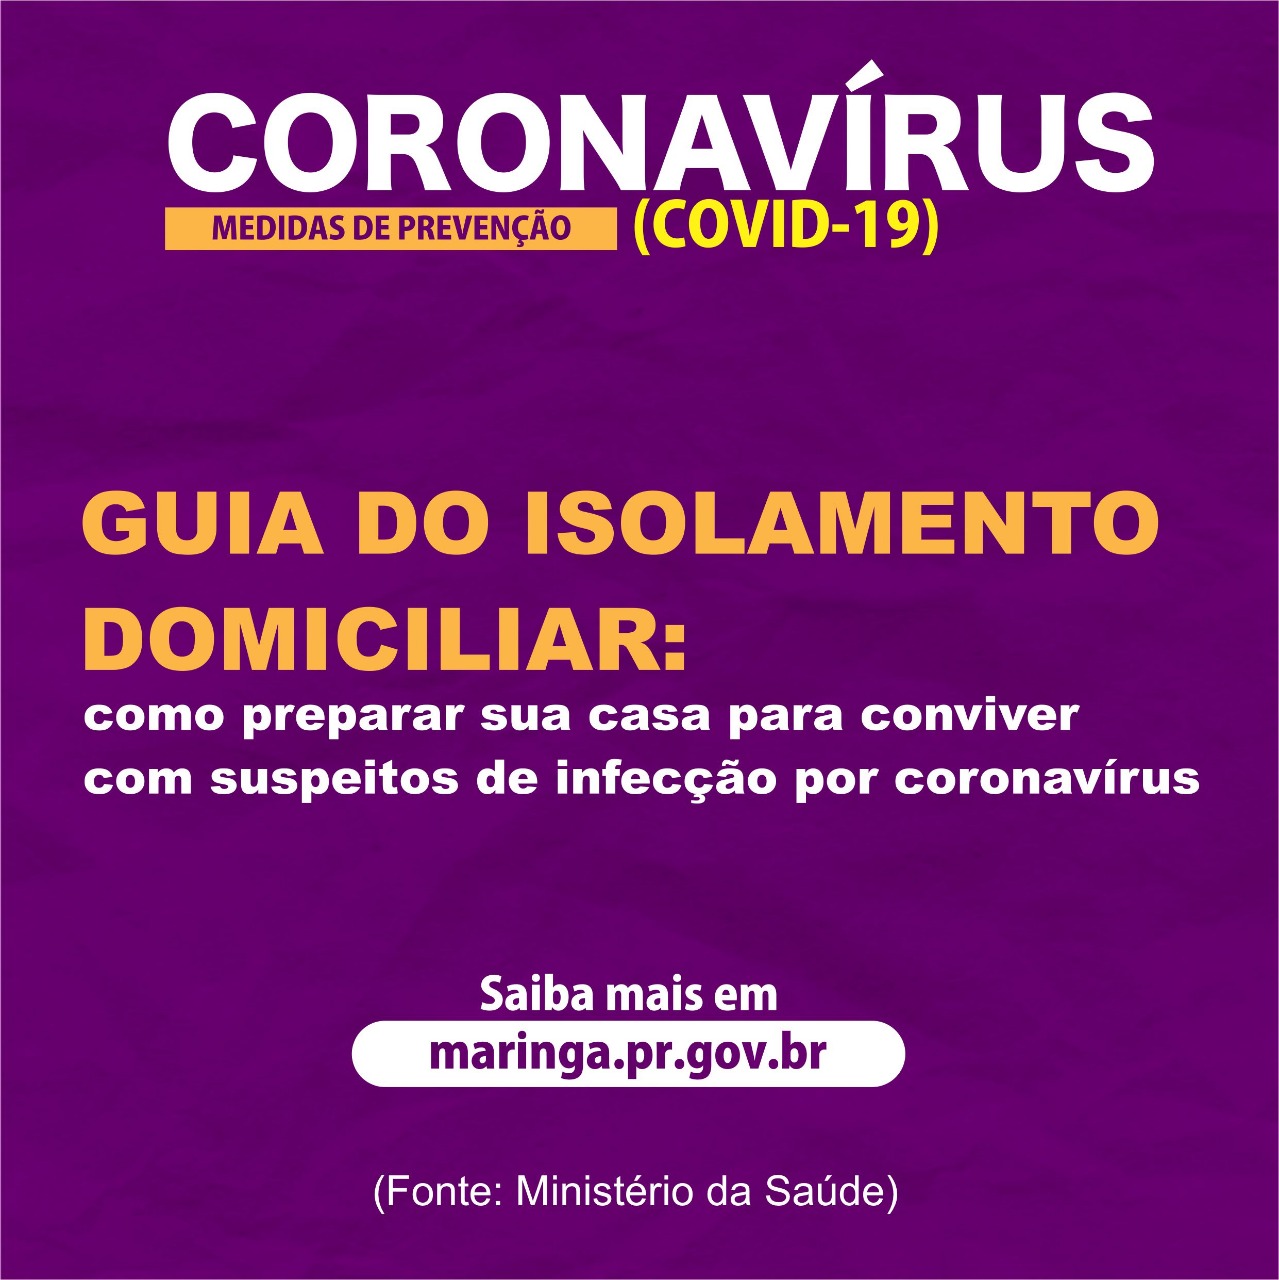 O Ministério da Saúde recomenda que pessoas com sintomas de coronavírus (covid-19) devem se isolar em suas casas